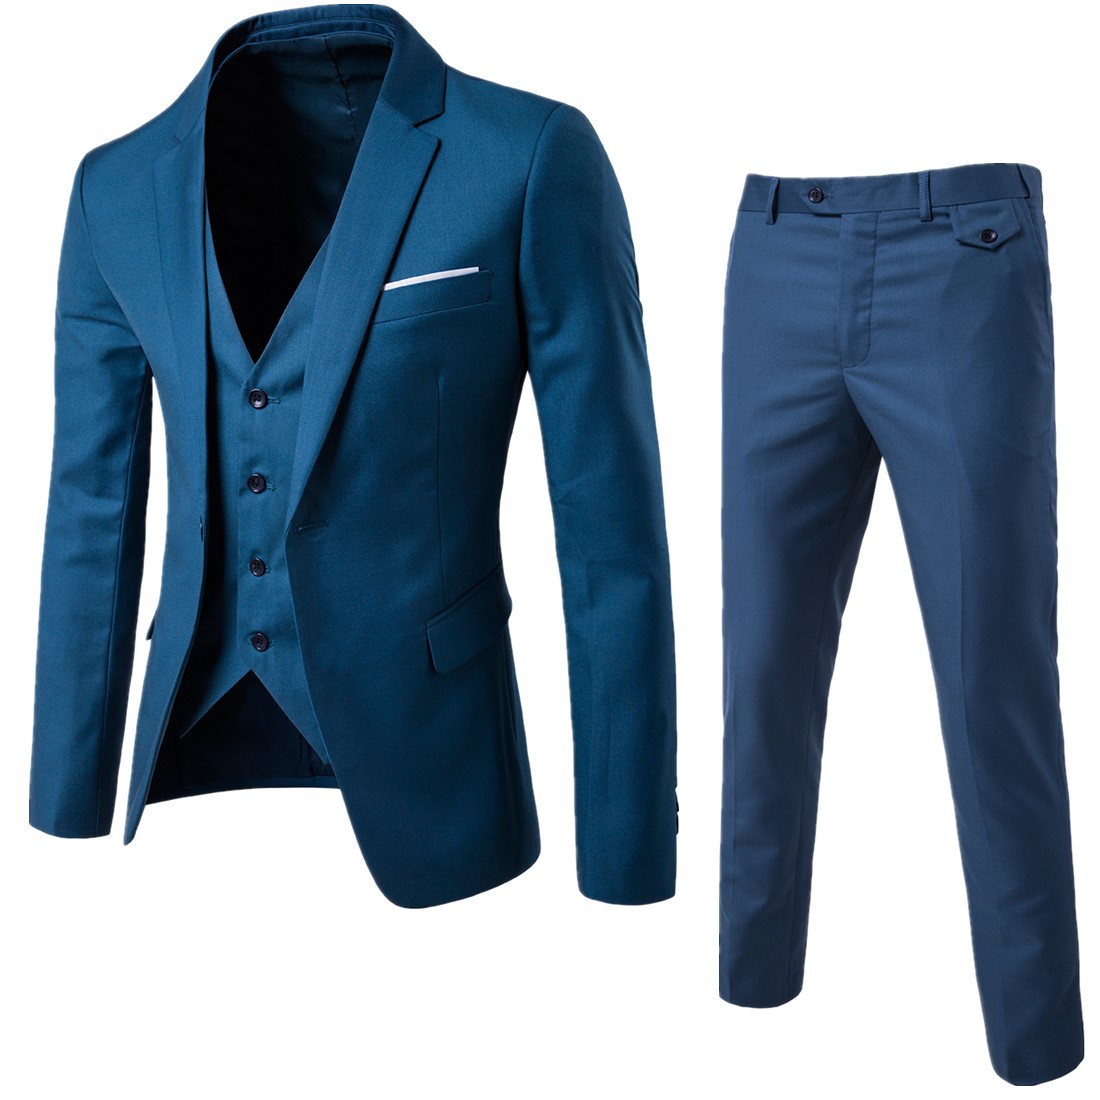 Authentic Korean slim men's suit suit professional business suit 3-piece fattening plus size solid color for work